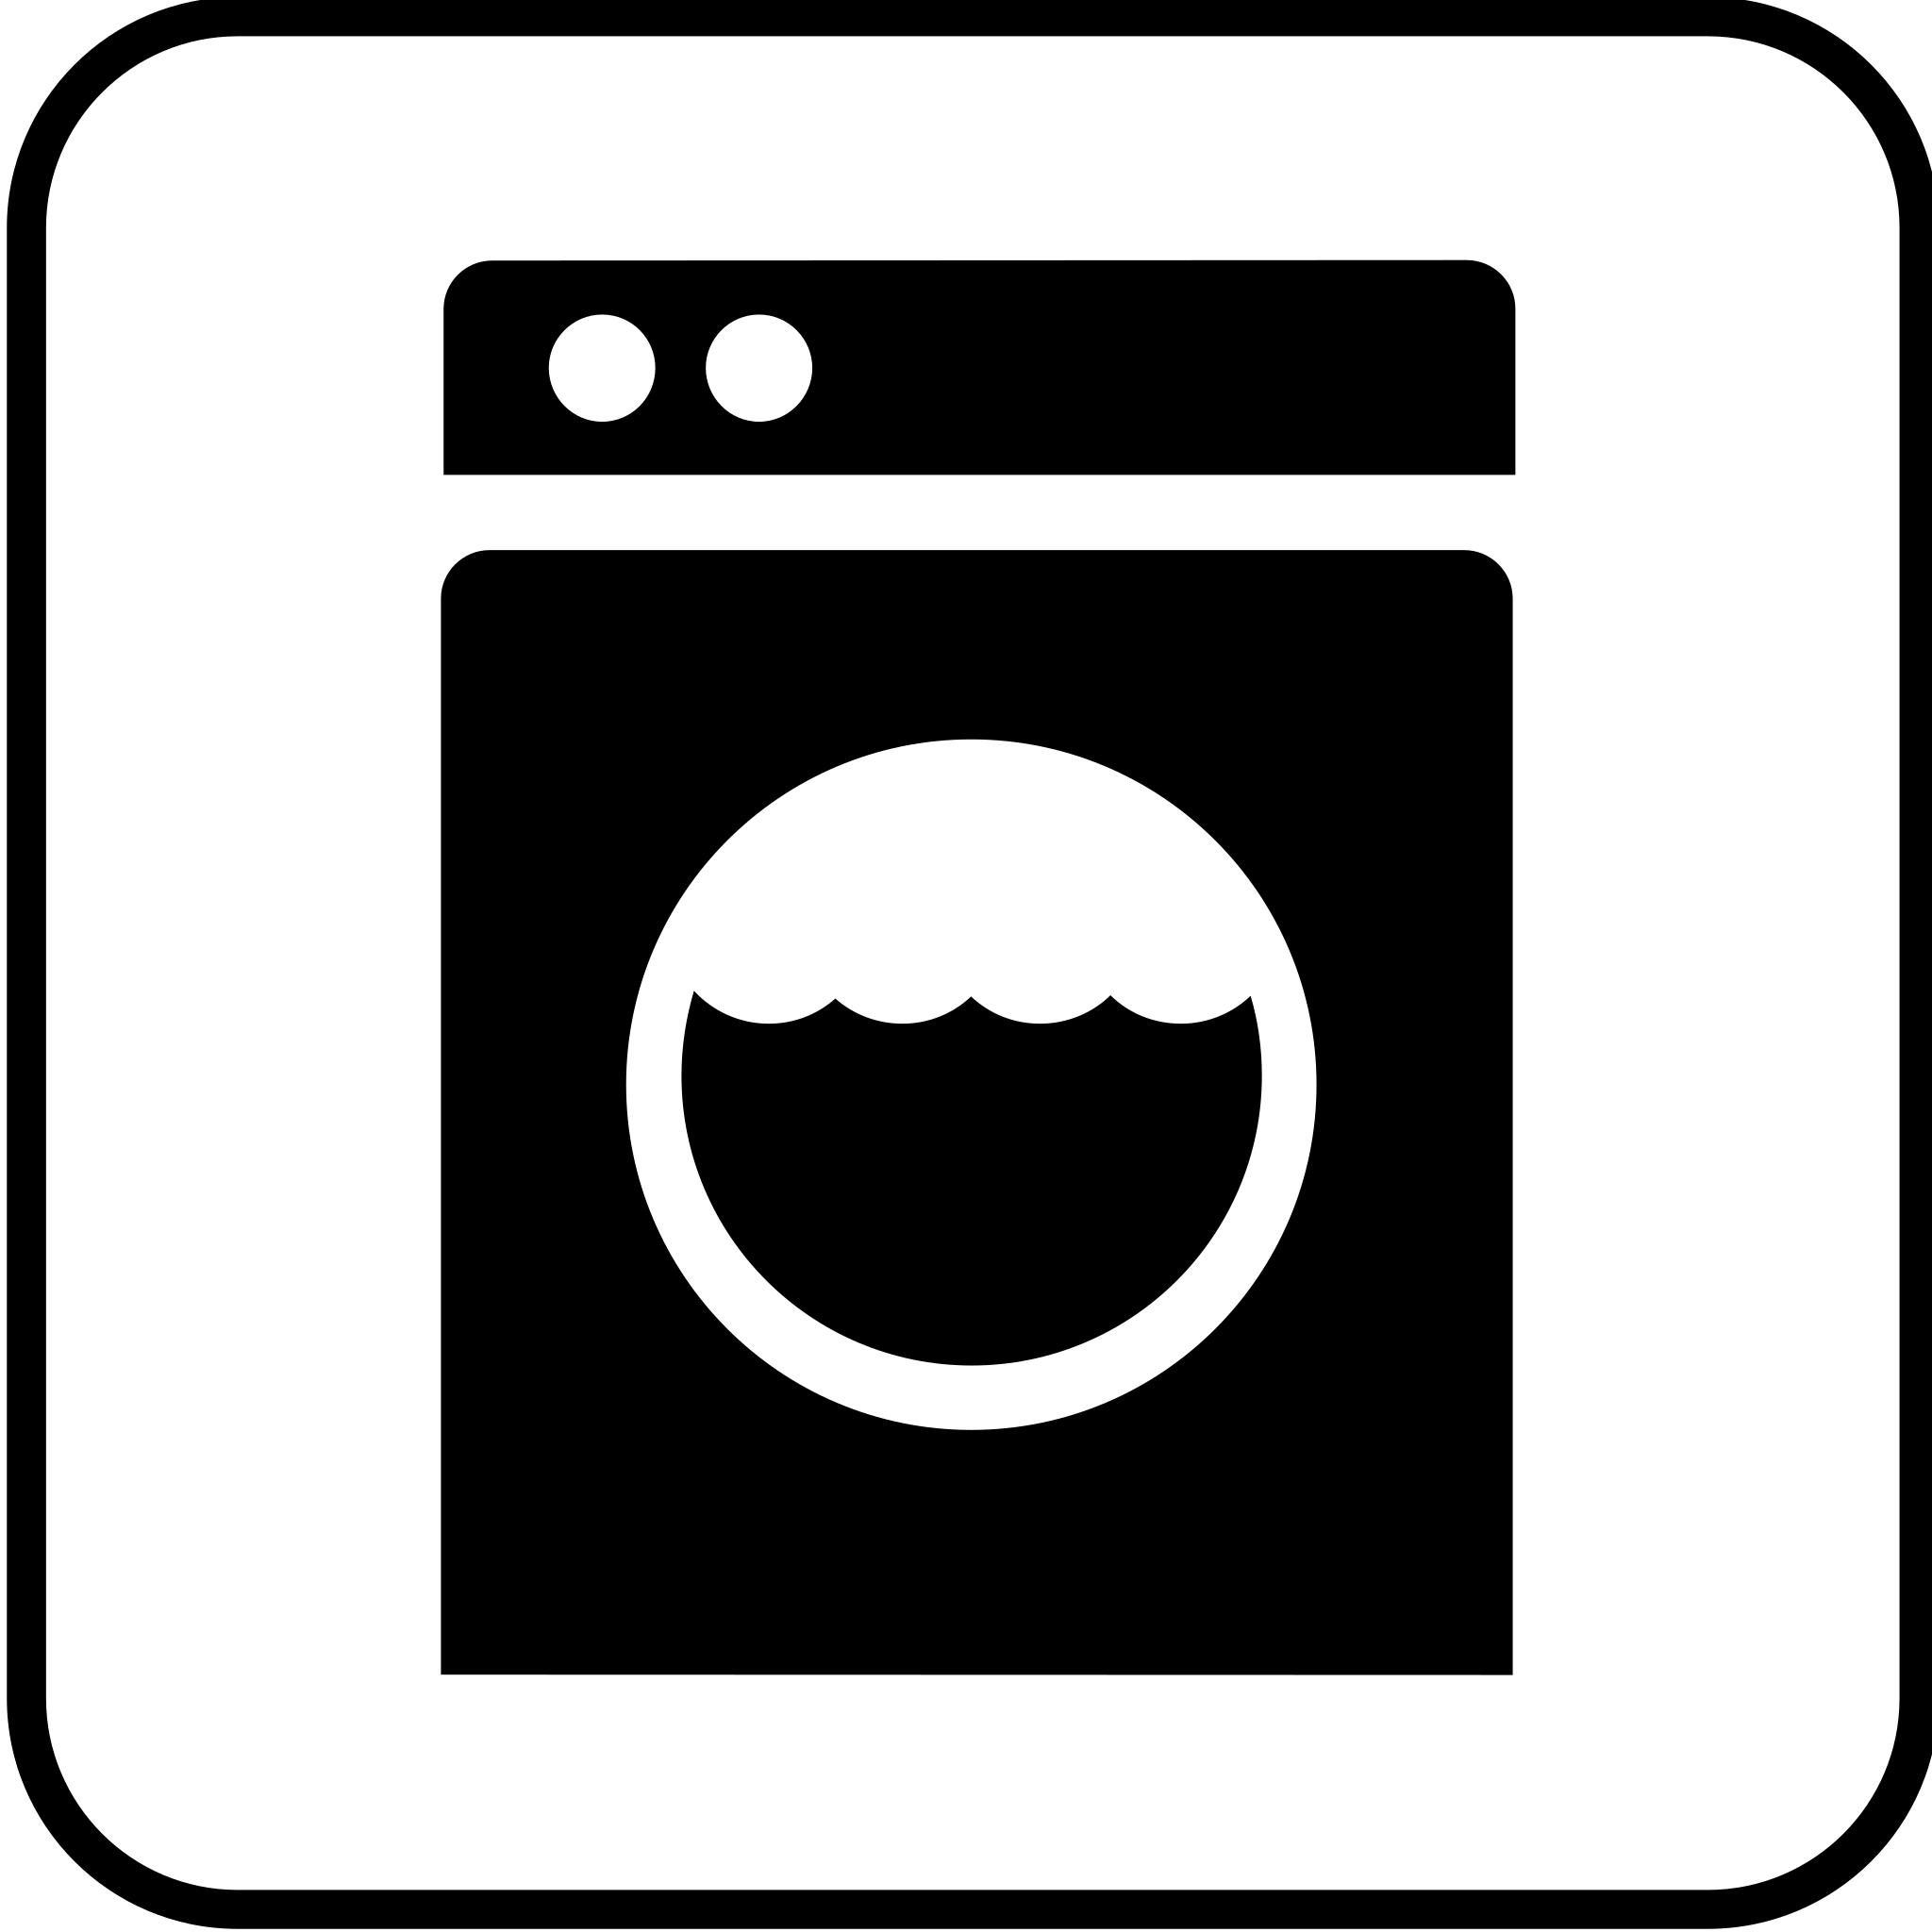 Значки на стиральной машине